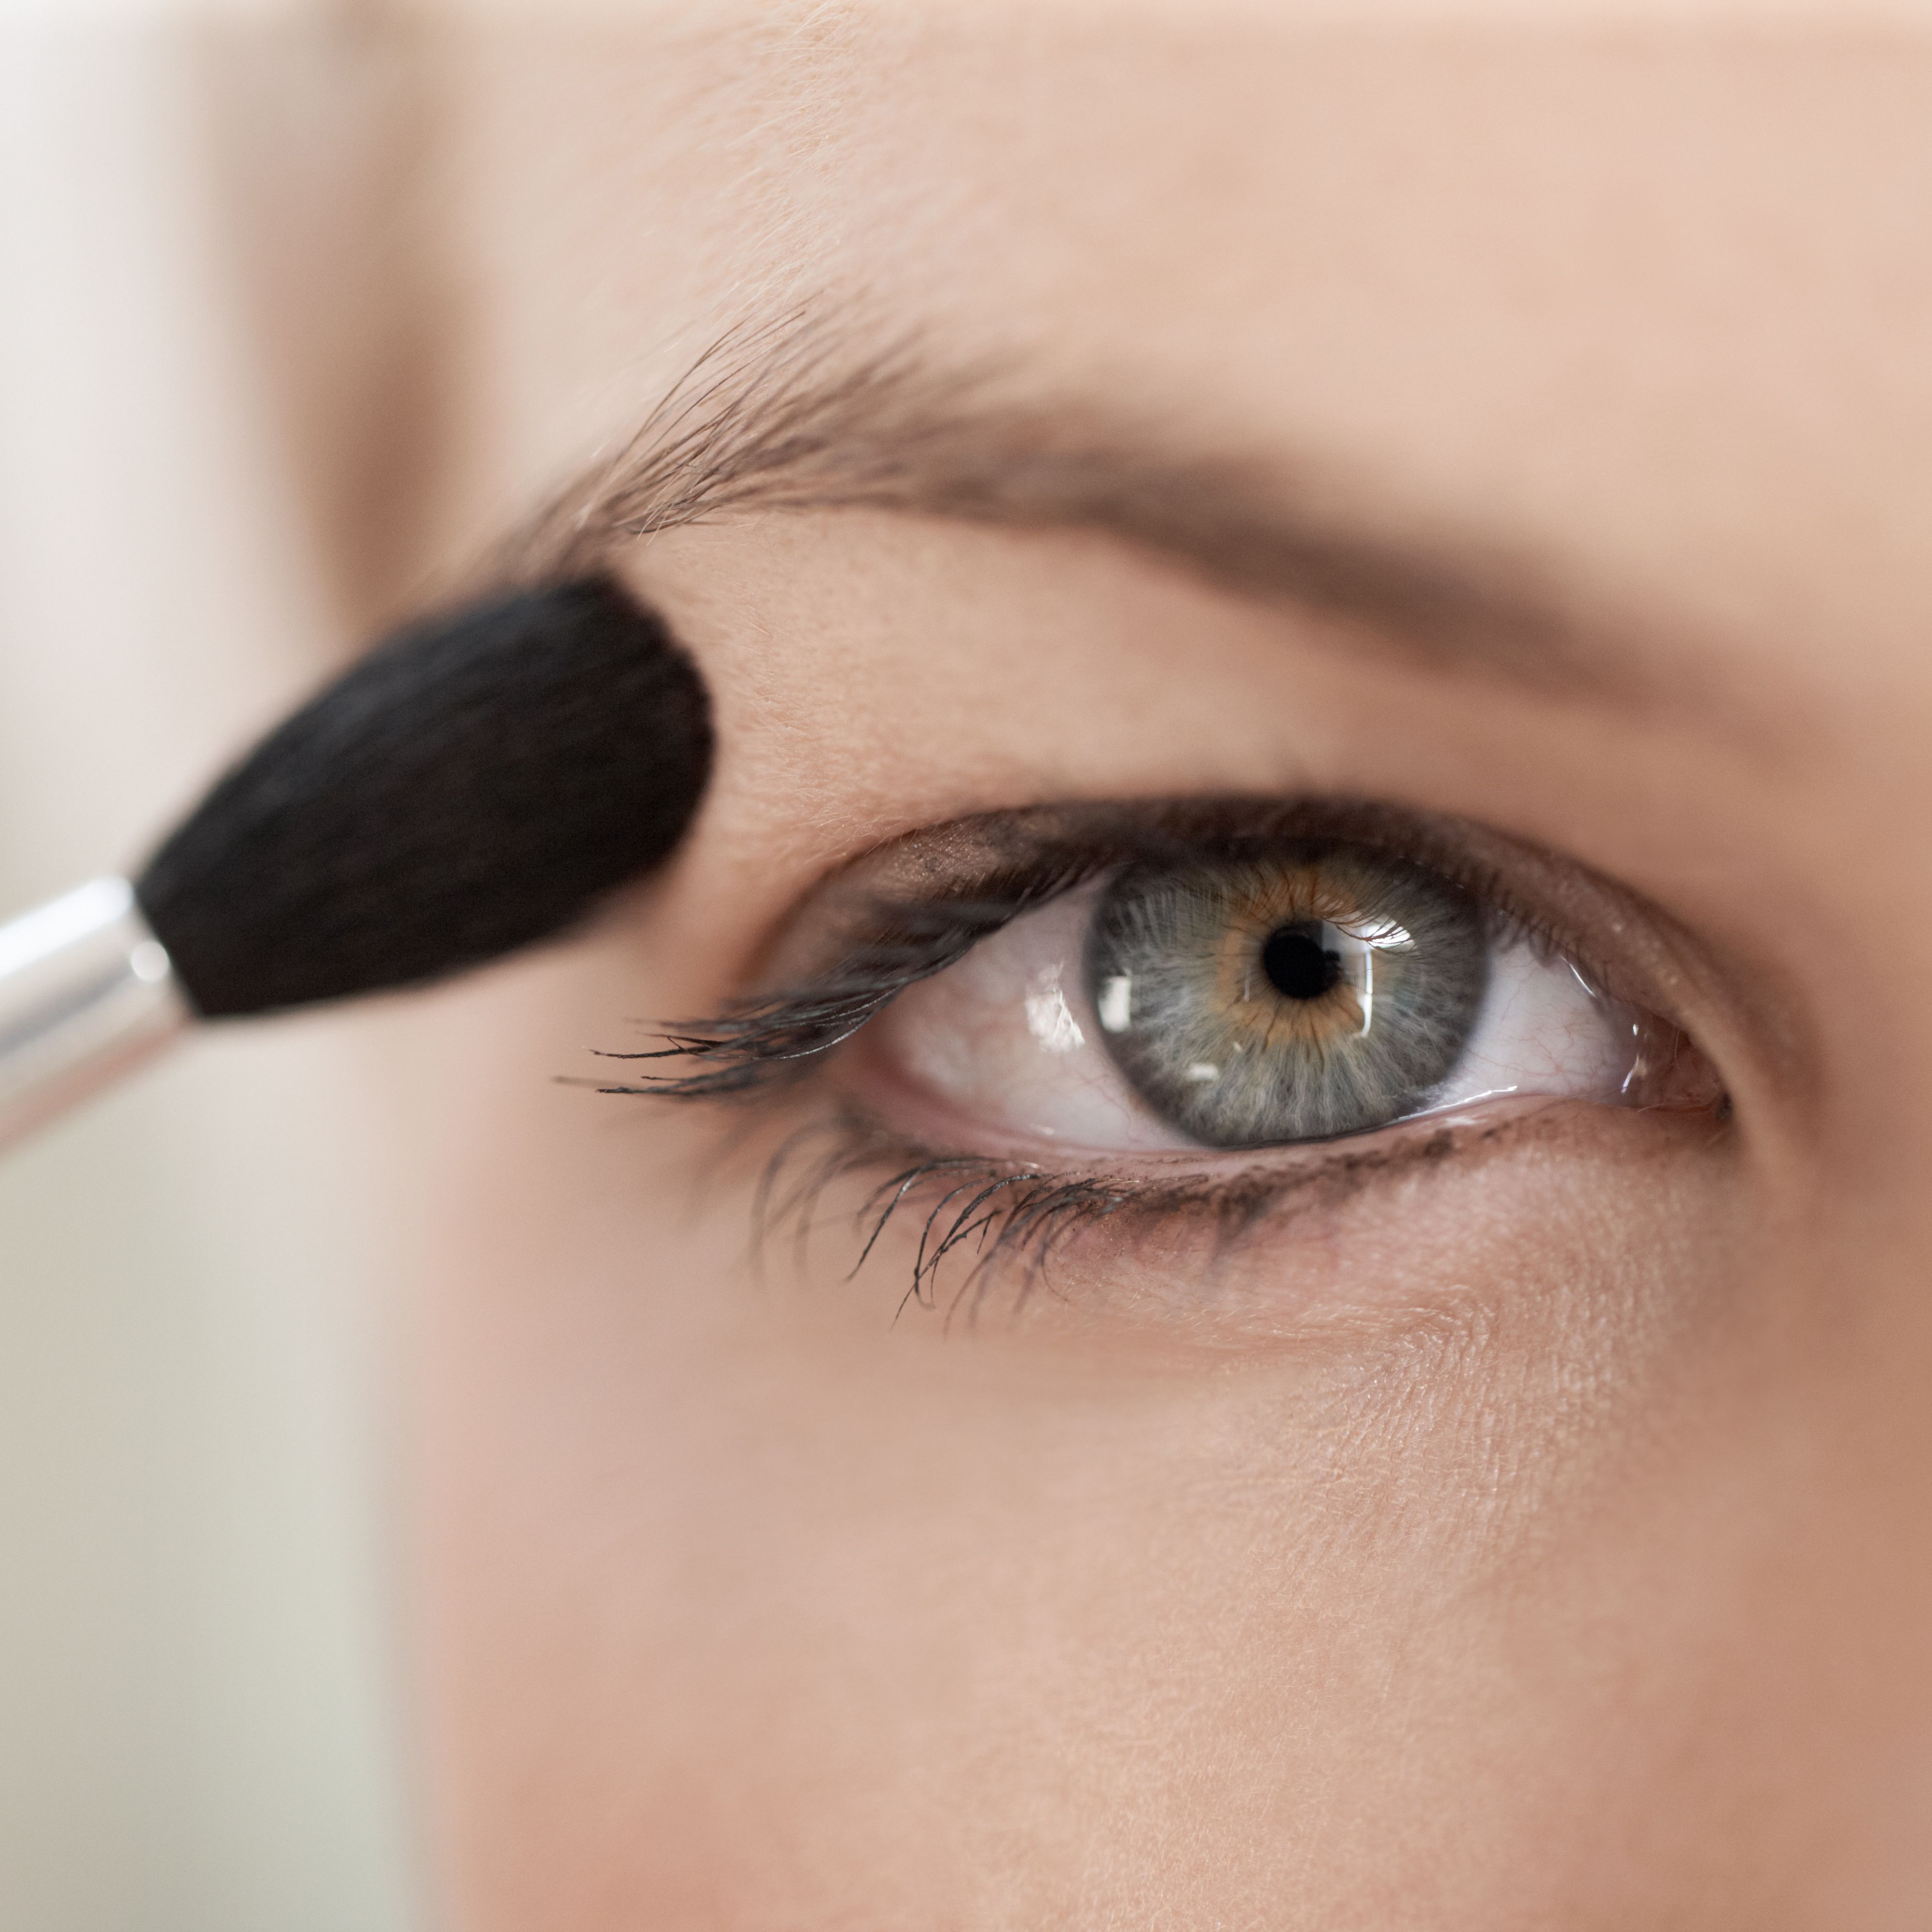 Best Eye Makeup For Hazel Eyes Makeup Tricks For Hooded Eyes Hooded Eyes Makeup Tips And Tricks